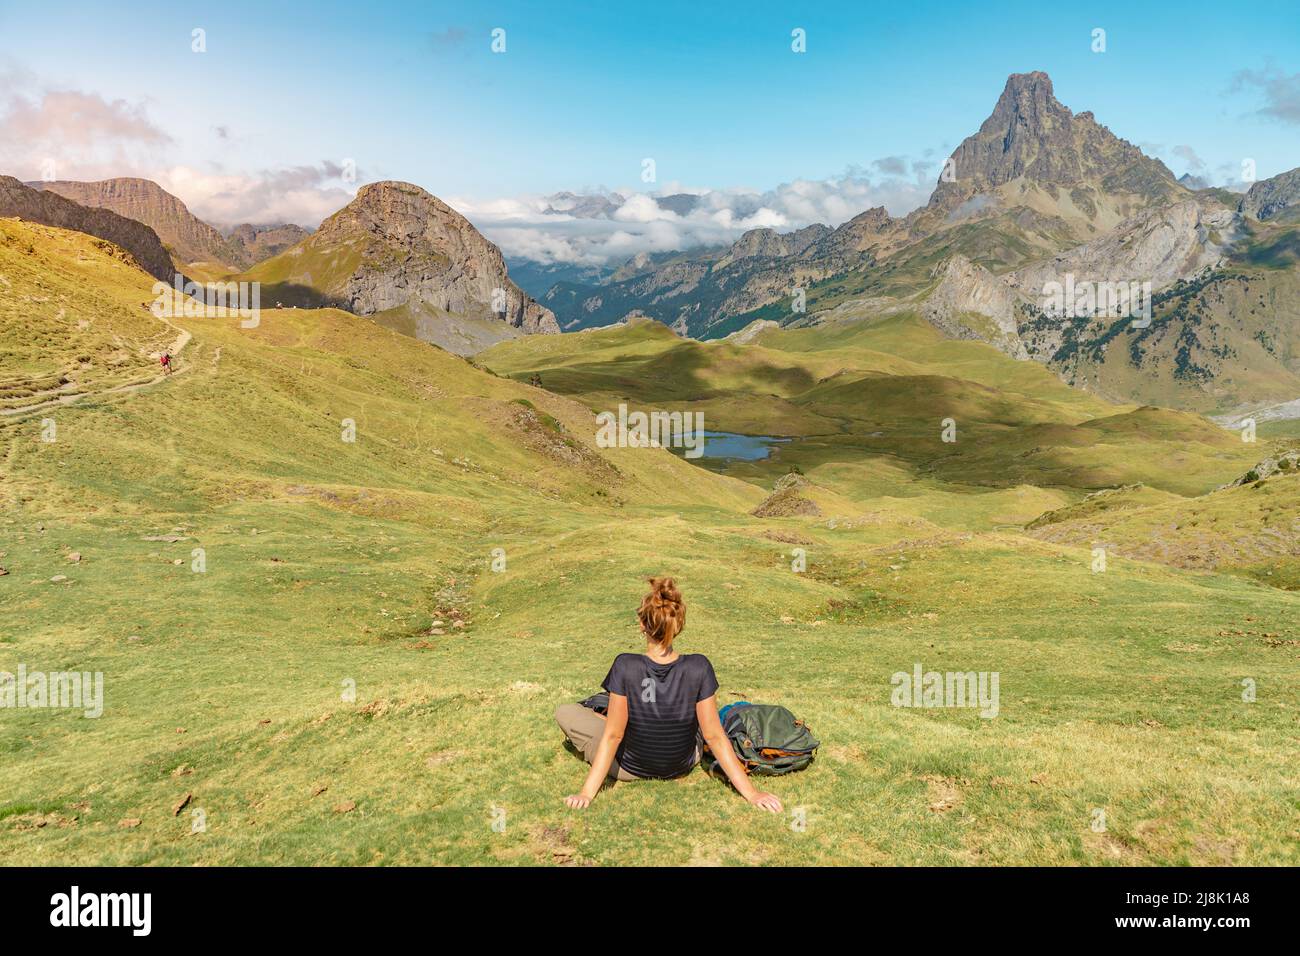 Junge attraktive Frau, die im Sommer in einer wunderschönen wilden Berglandschaft sitzt. Discovery Travel Destination Konzept. Stockfoto